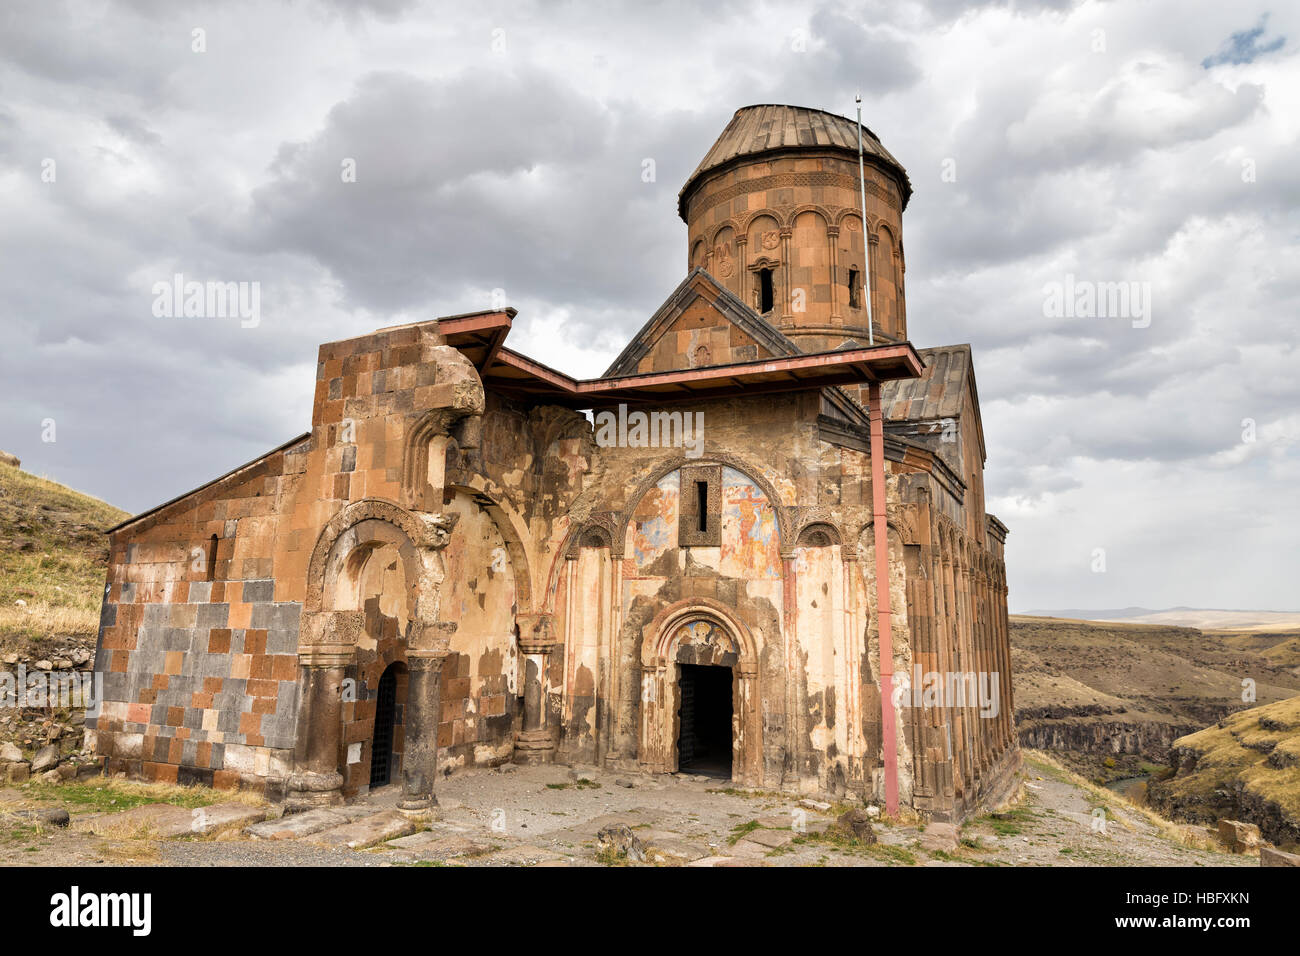 Vista de la fachada de San Gregorio de Tigran Honents en ANI. Ani es una ciudad medieval armenio en ruinas situado en Kars. Foto de stock